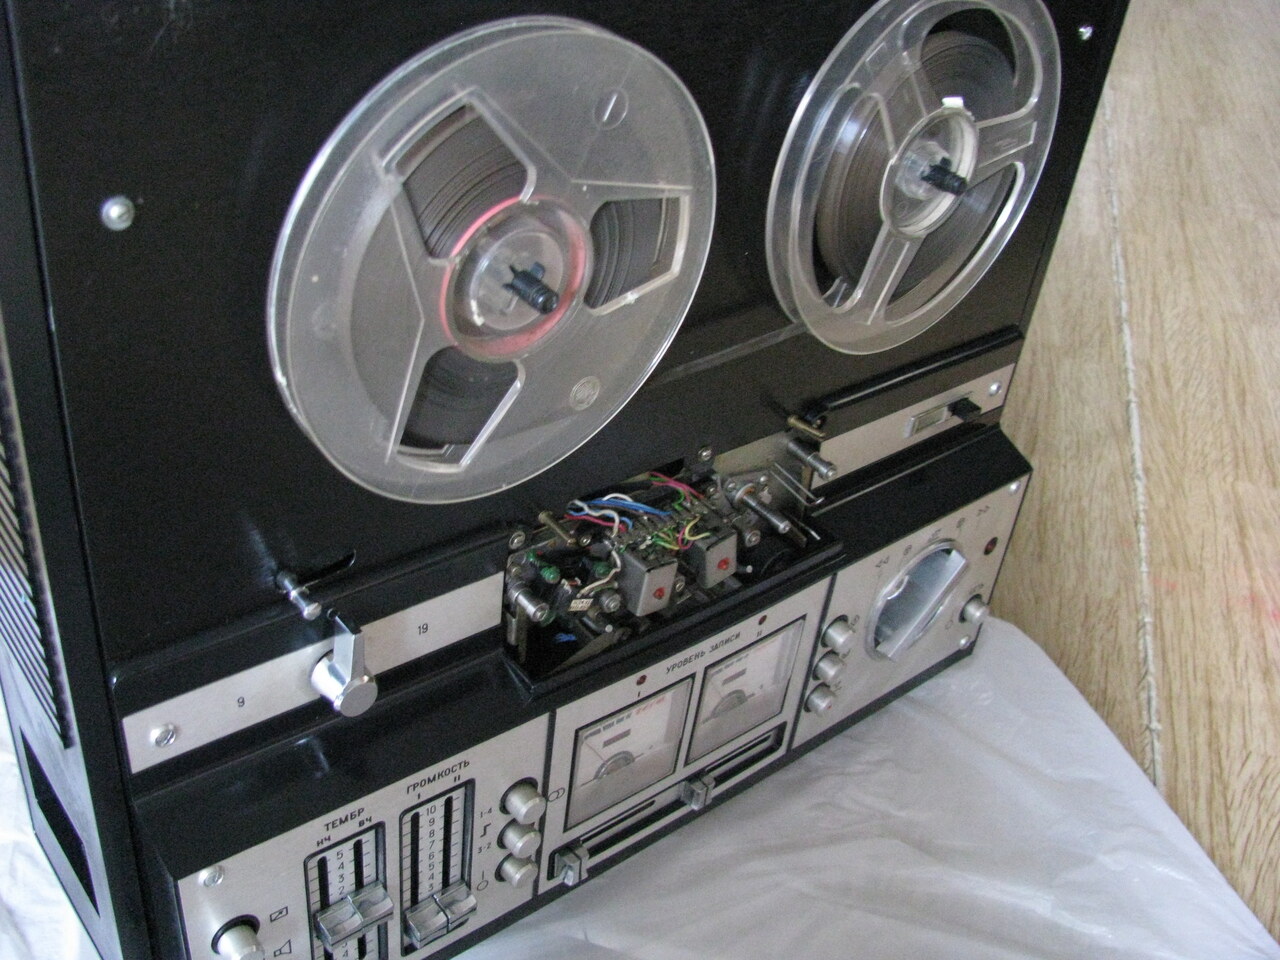 катушечный магнитофон Астра-110-стерео — 1 000 руб. — Общение